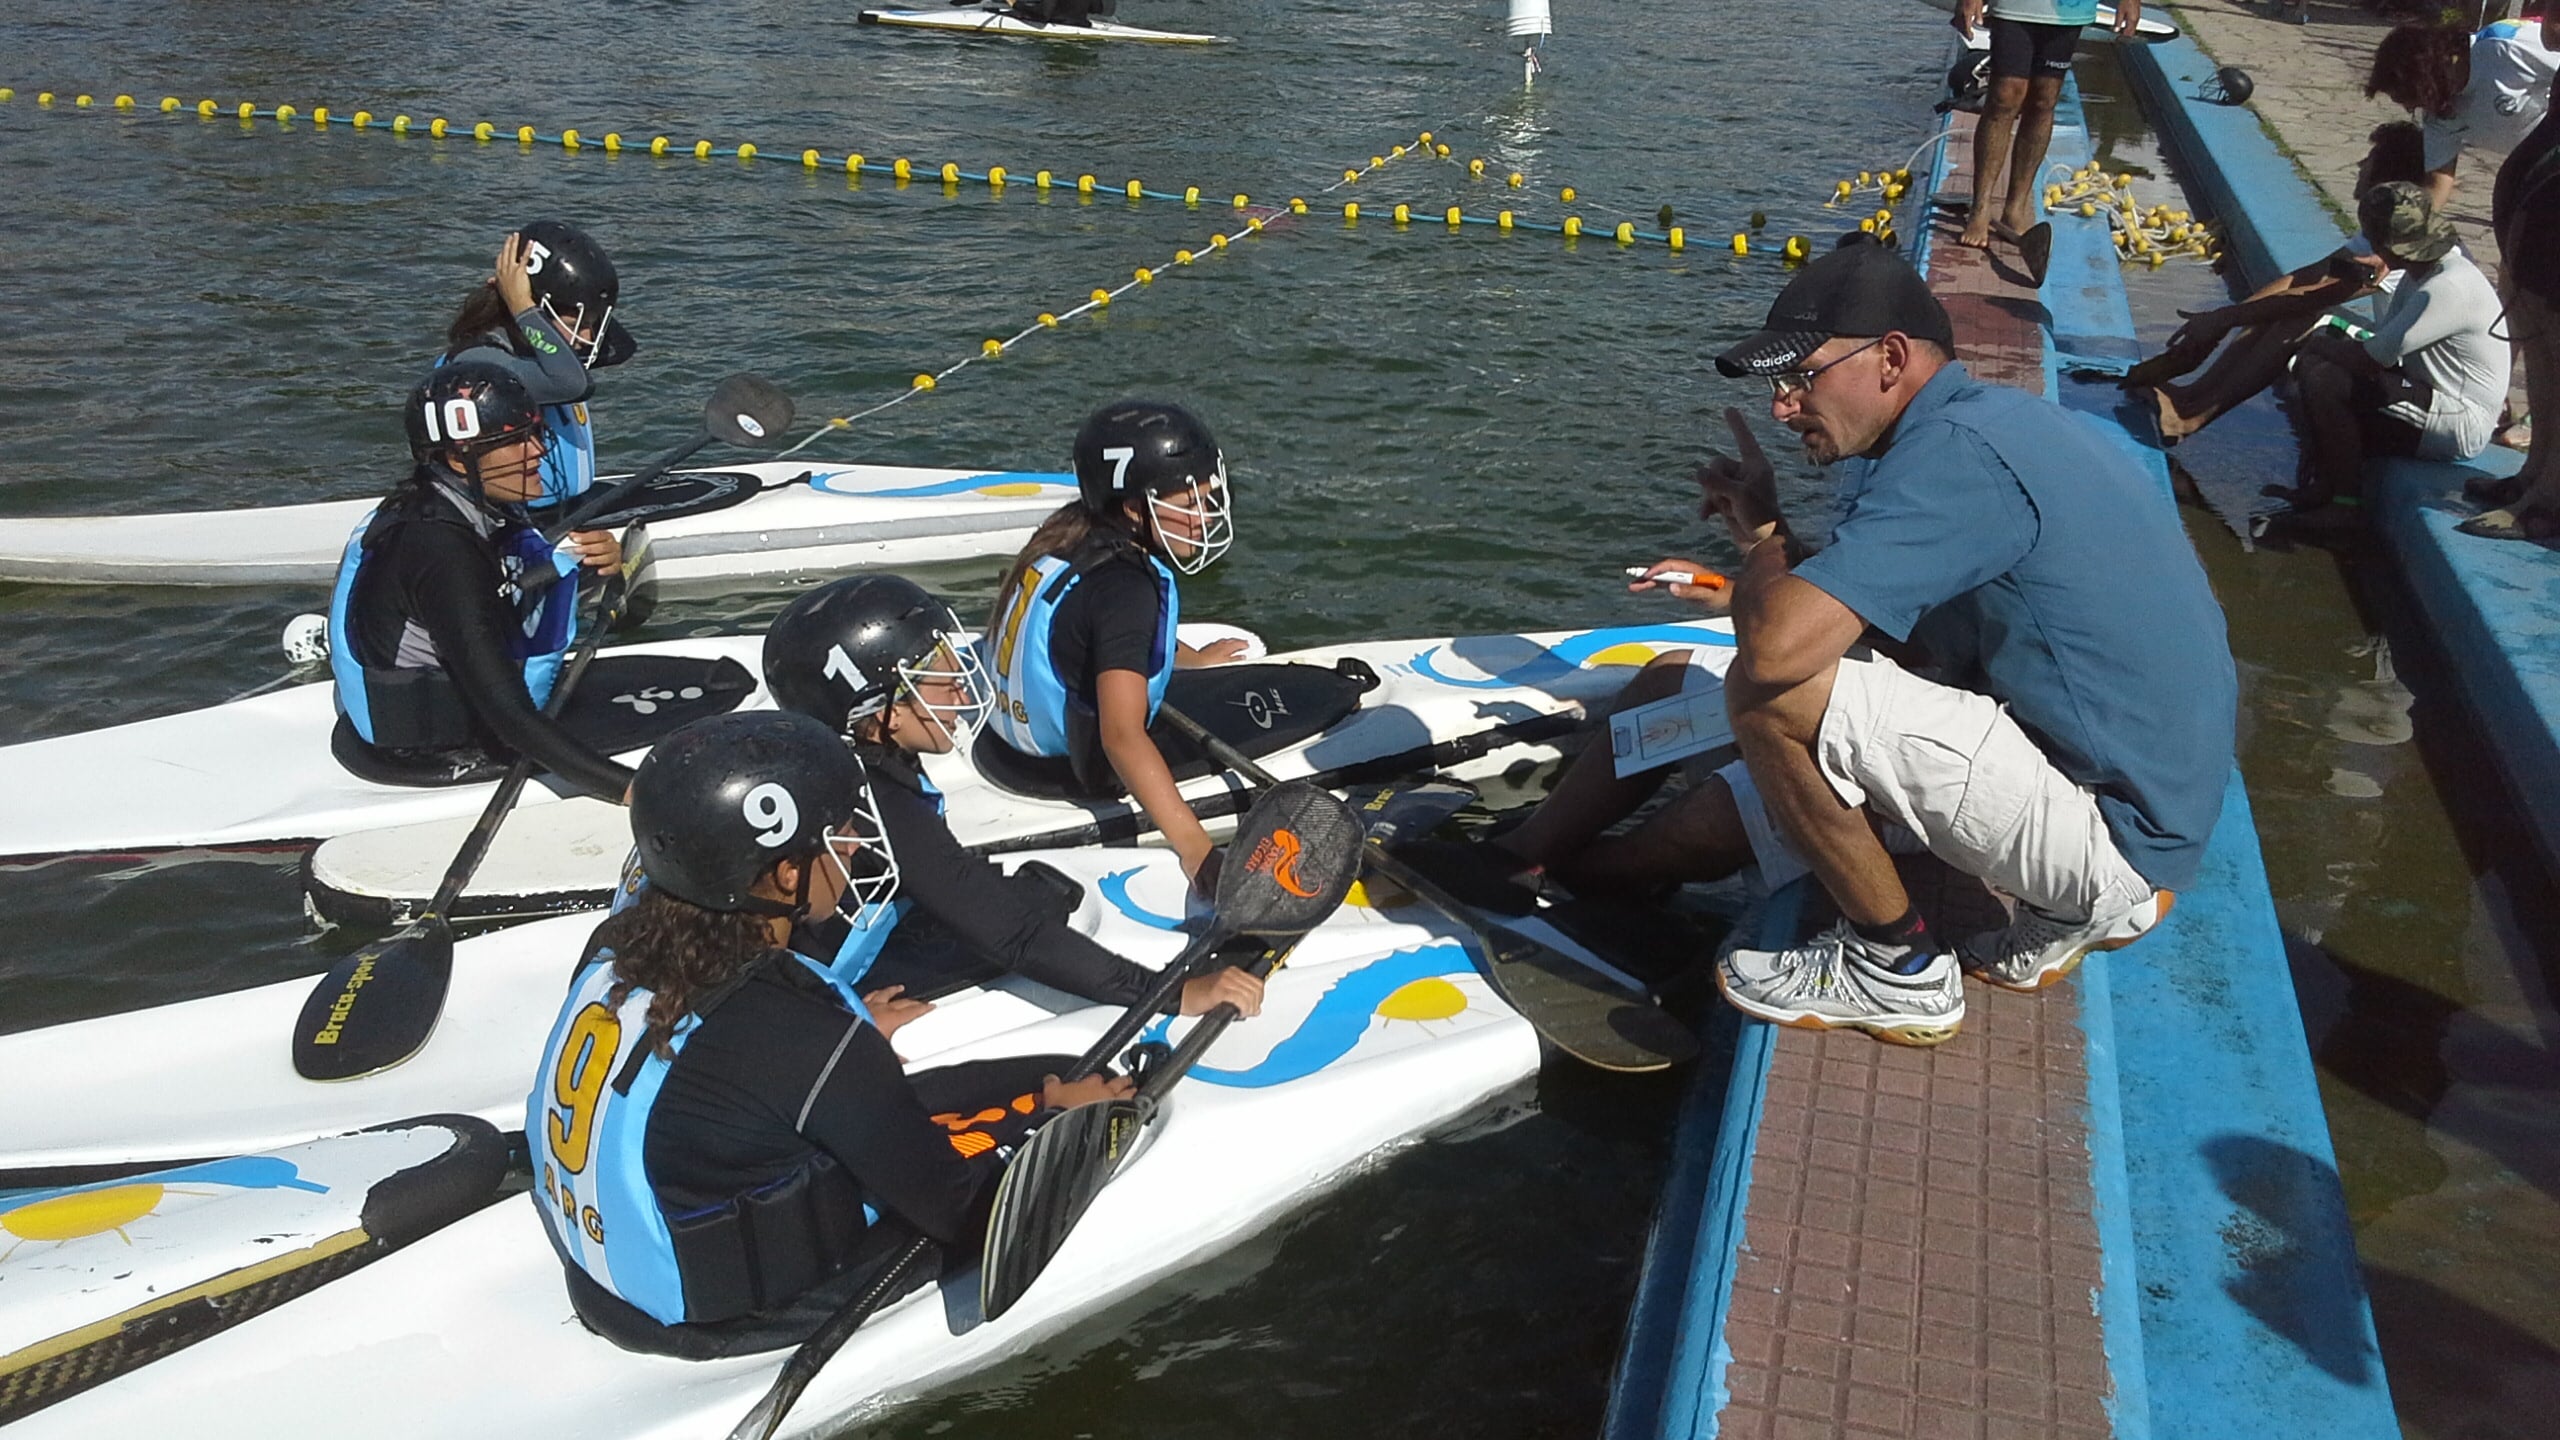 El Panamericano de Kayak Polo, se juega en nuestro país